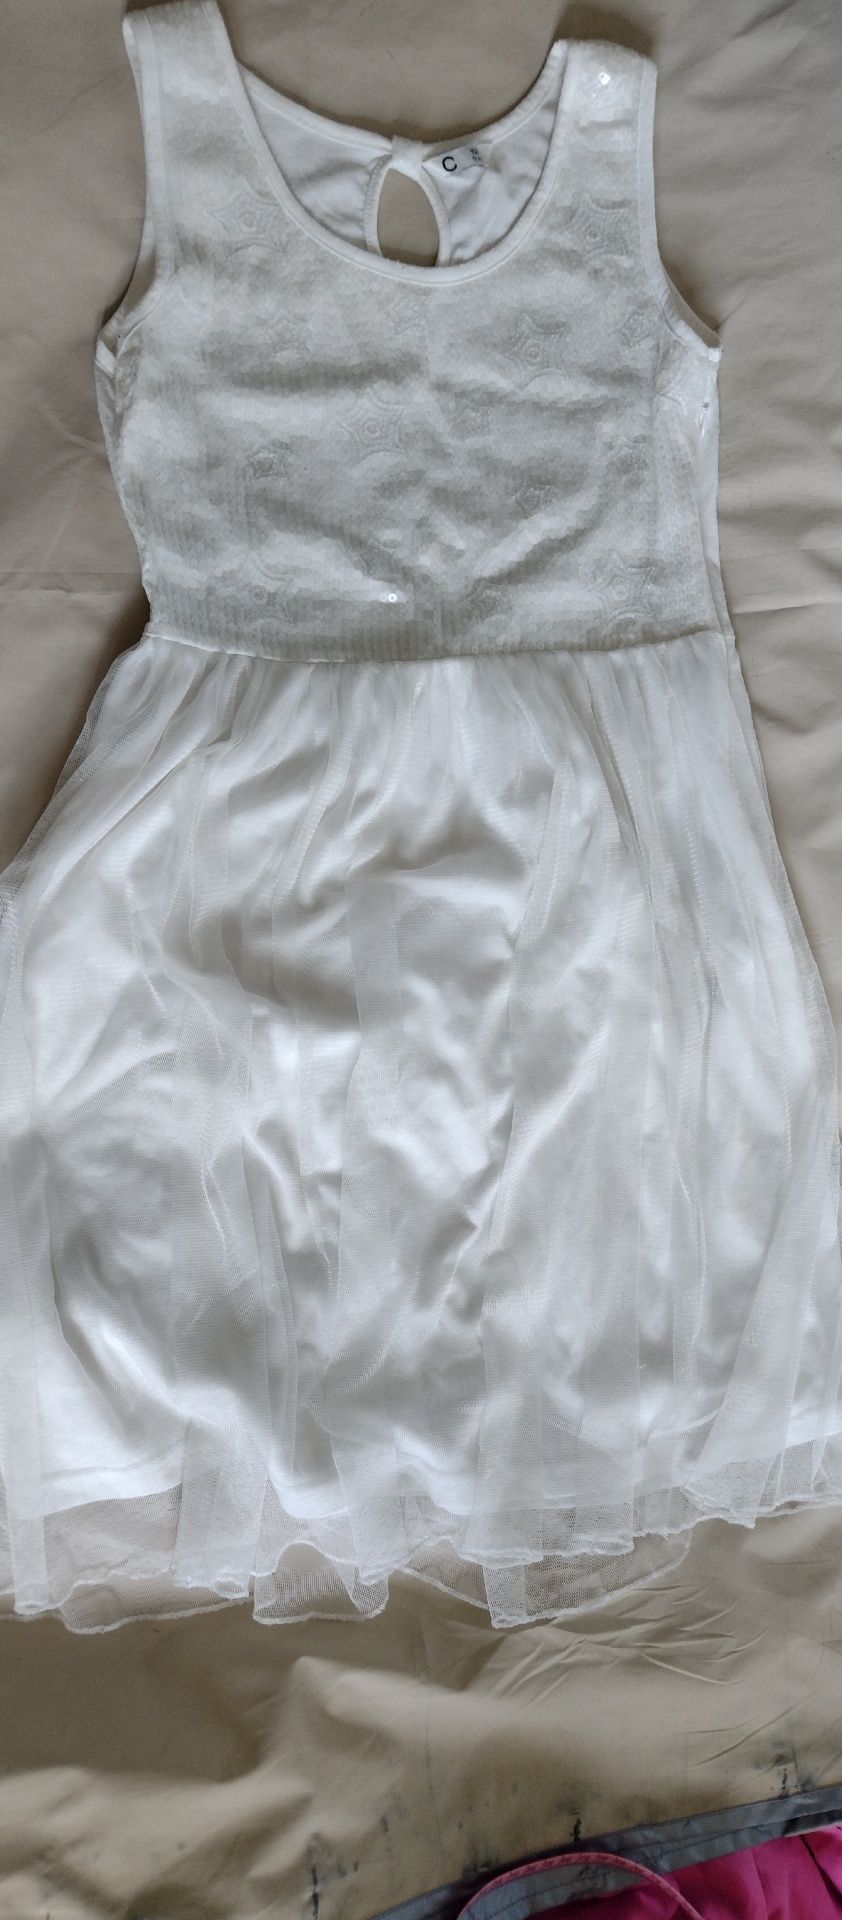 Sukienka biała, tiulowa r. 158